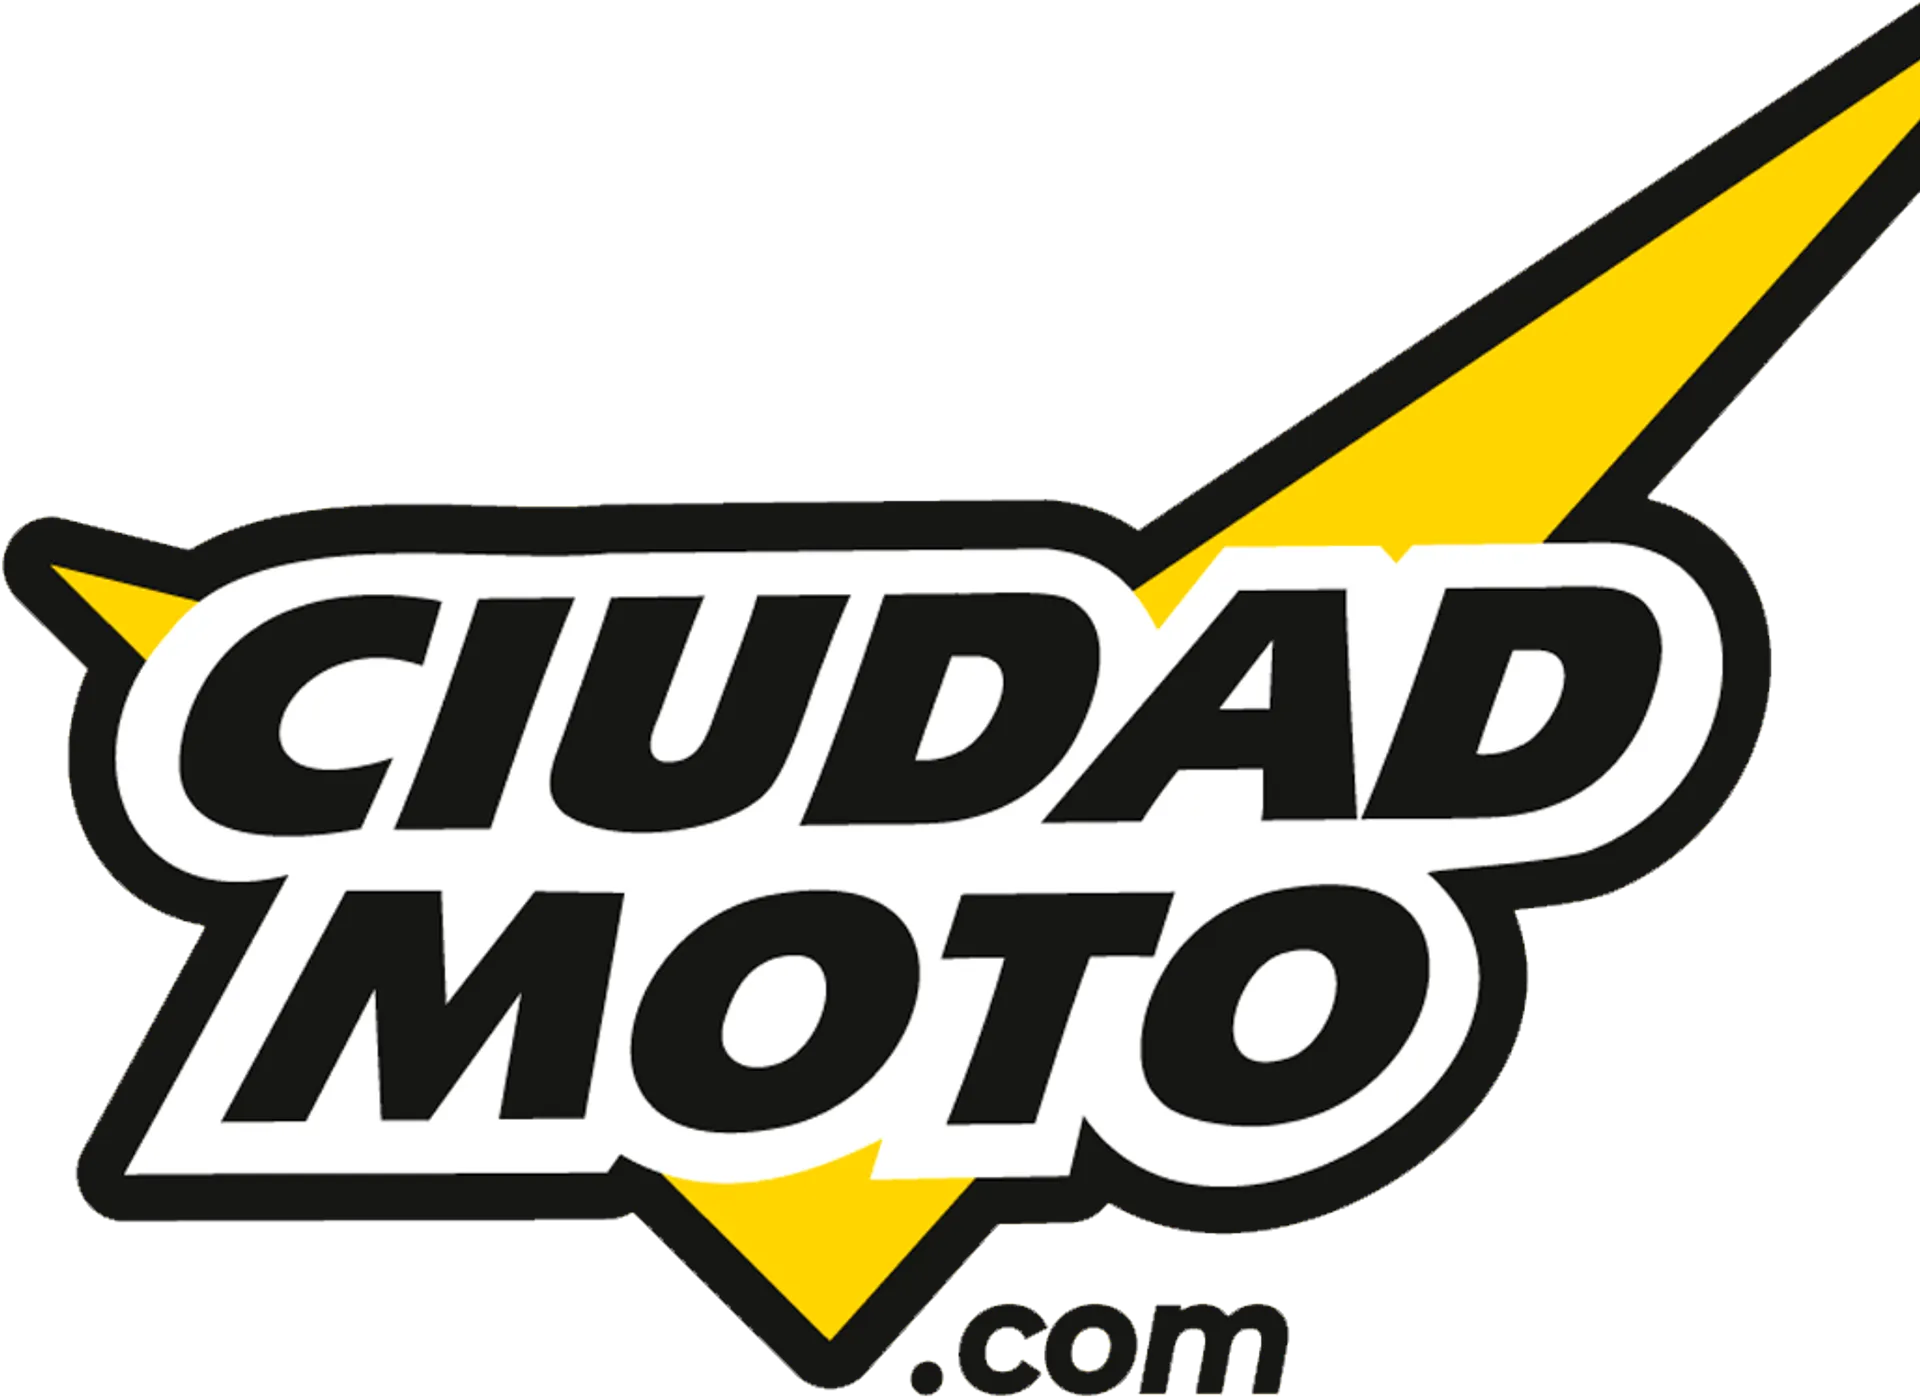 CIUDAD MOTO logo